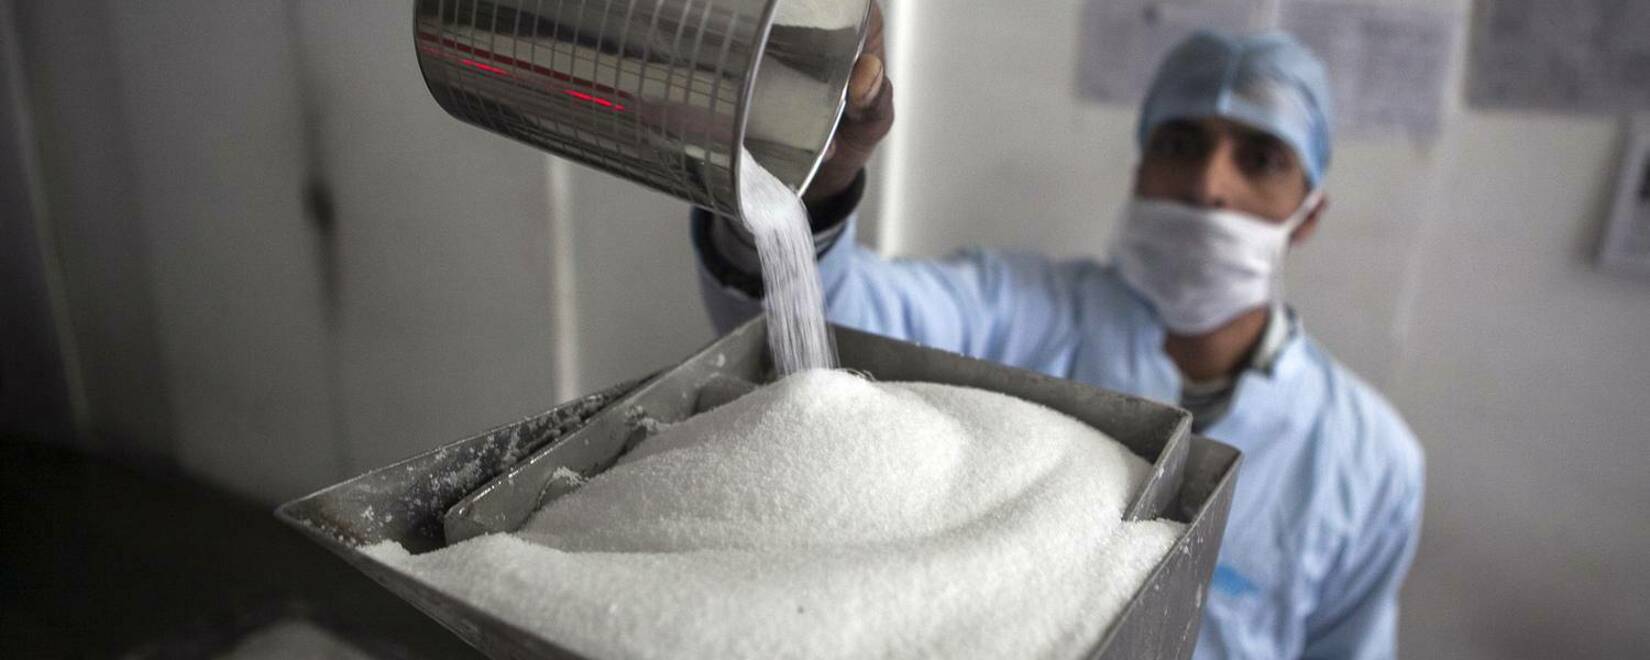 Фьючерсы на сахар-сырец выросли до самого высокого уровня за 12 лет